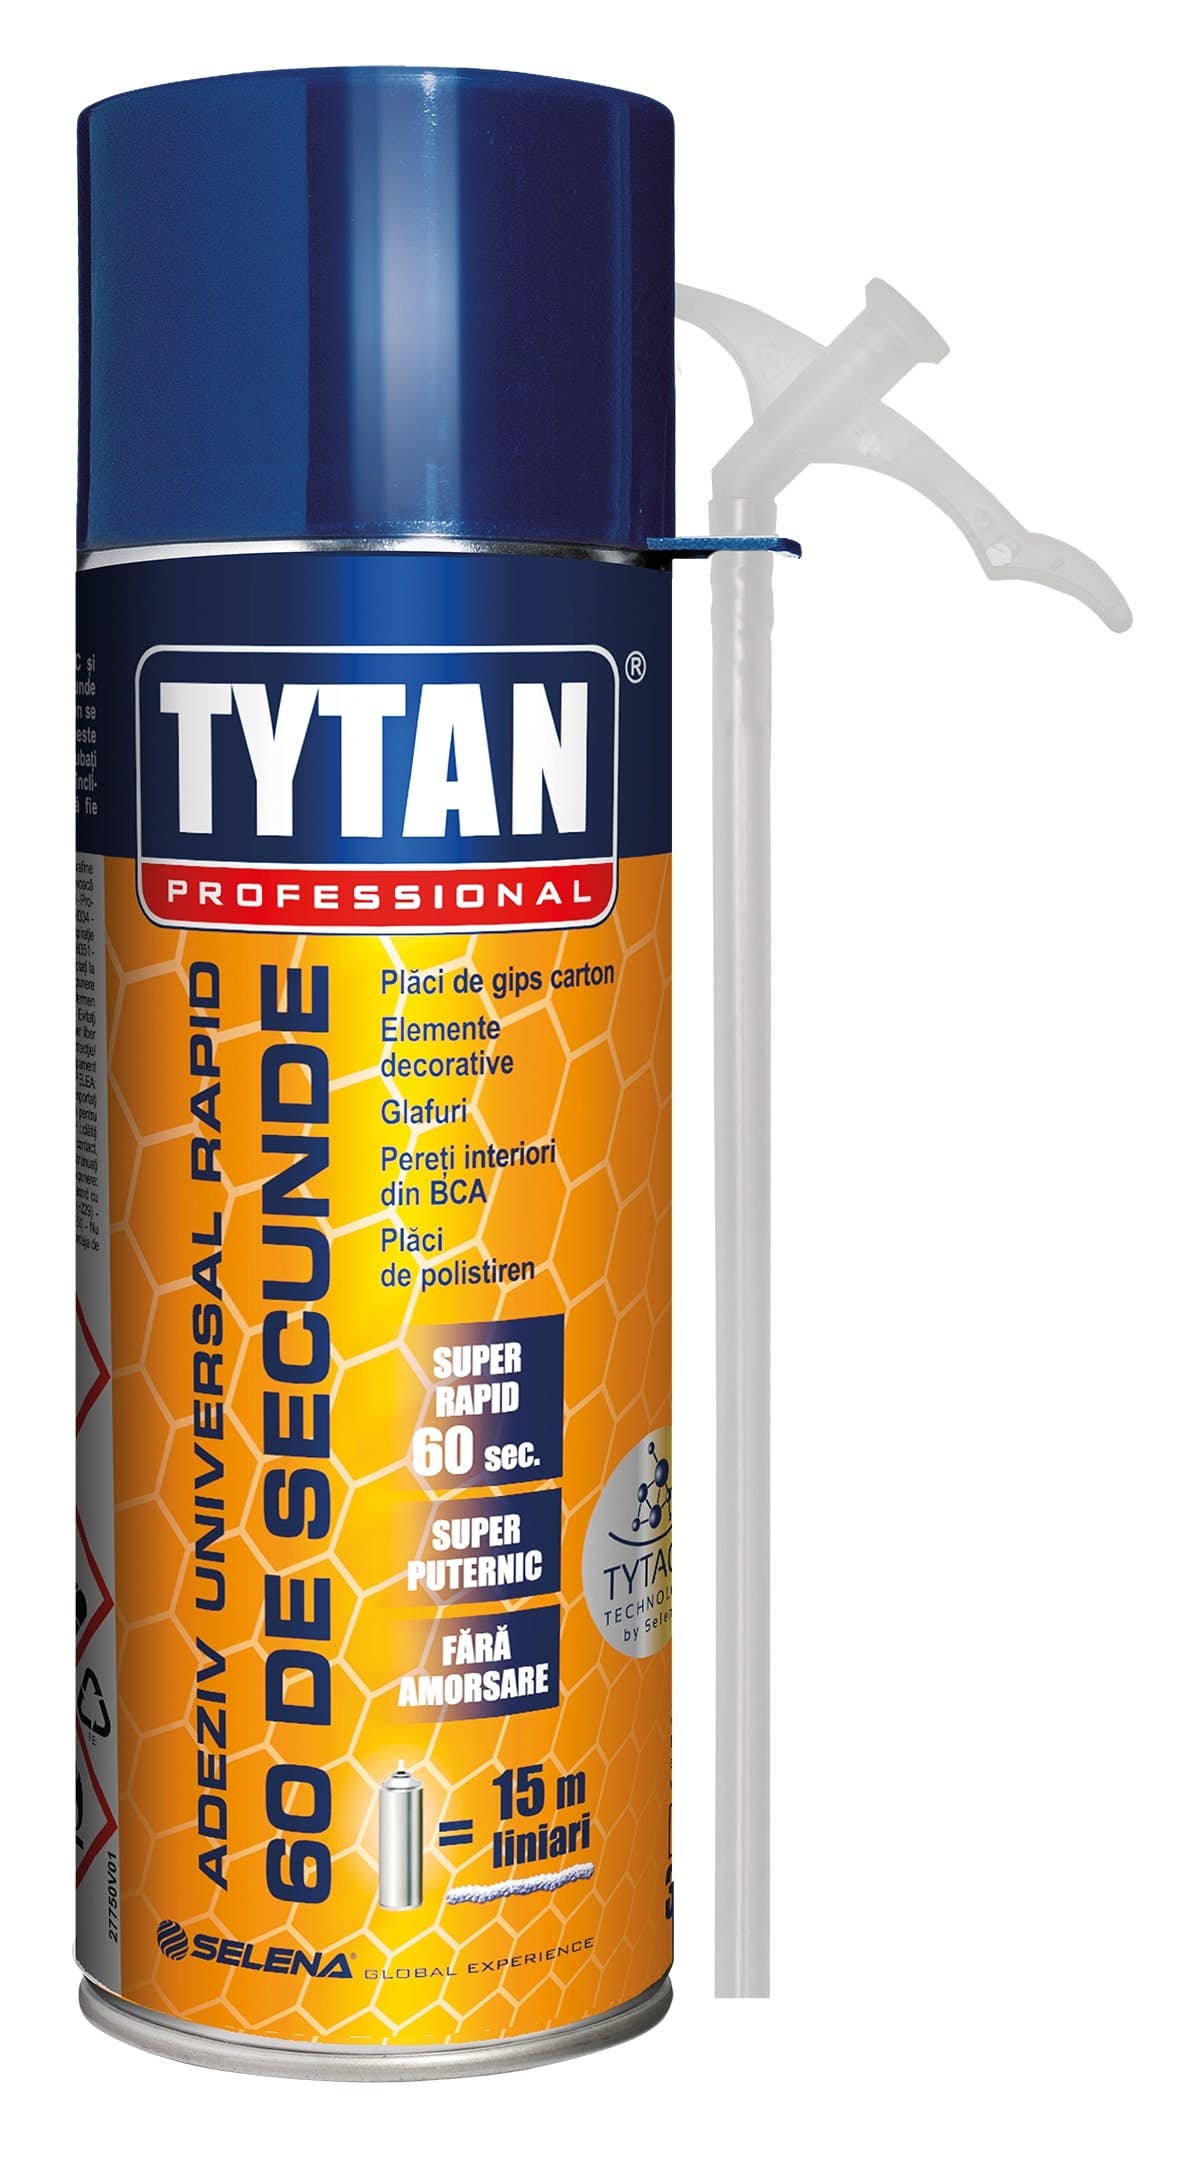 Polyurethane foams - 60 seconds straw mounting glue foam, Tytan Professional, 300ml, https:maxbau.ro